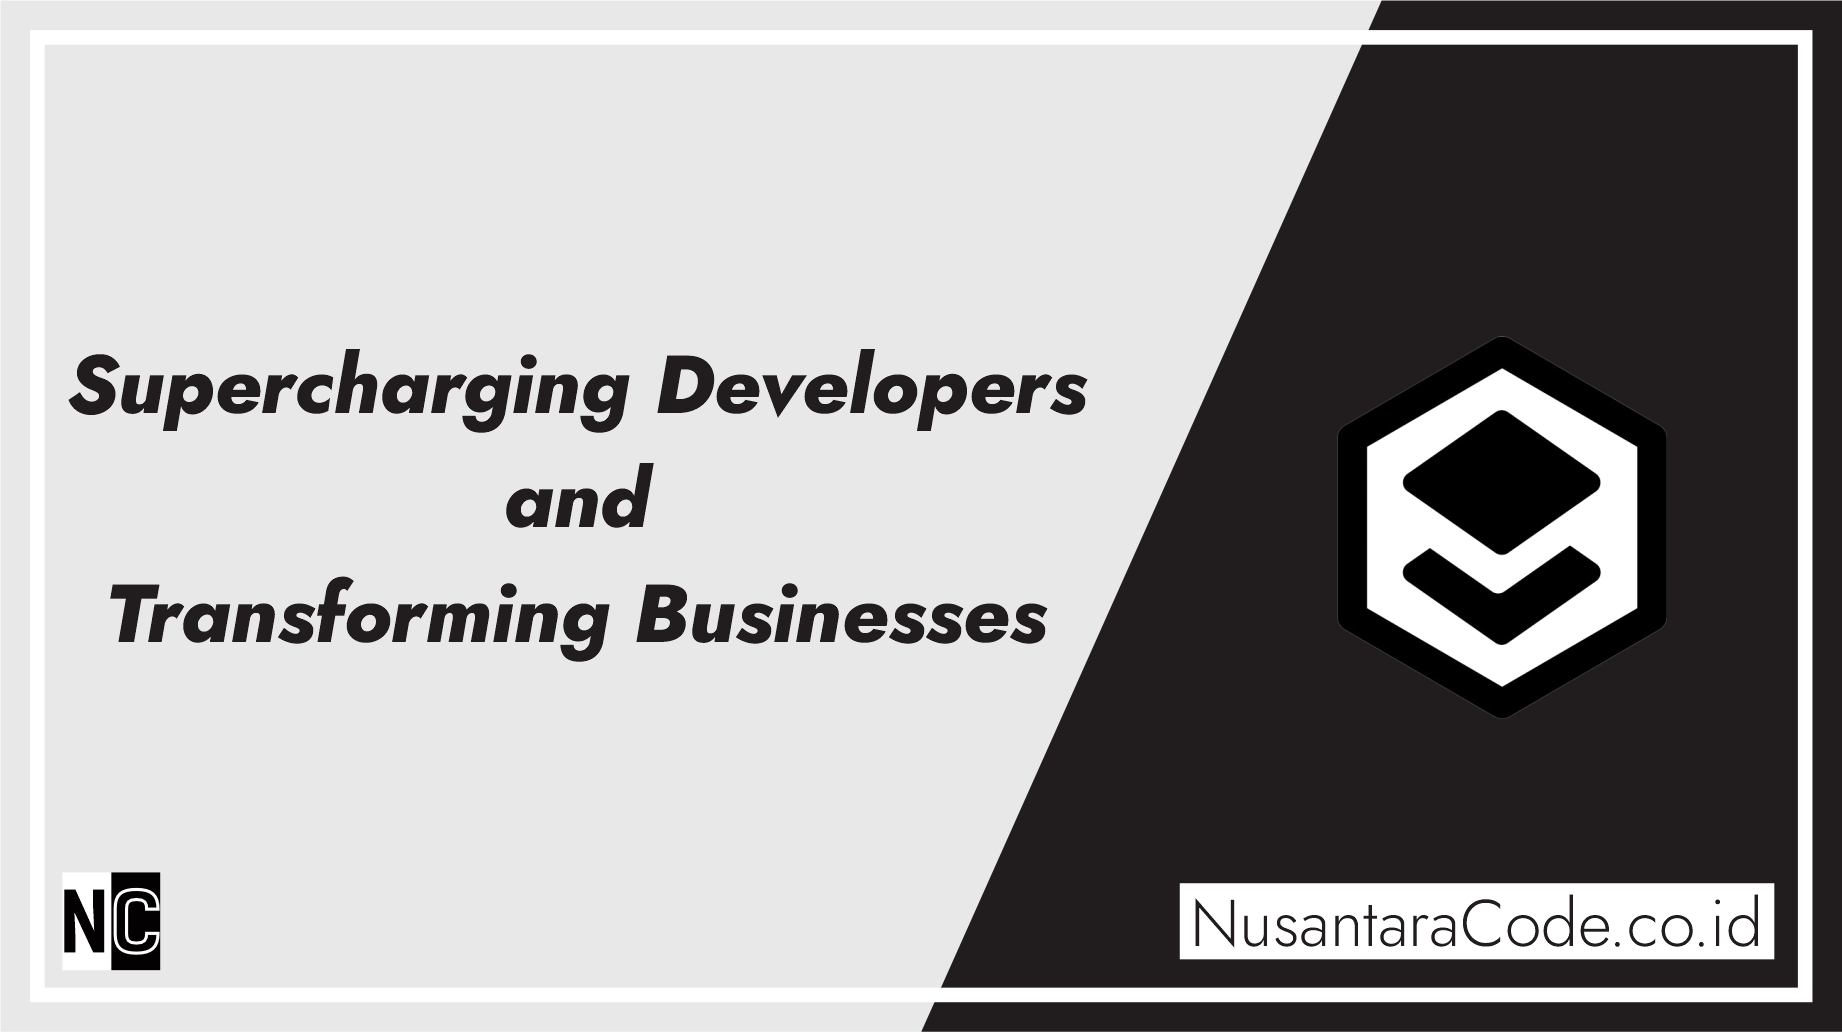 Internal Developer Platforms: Supercharging Developers and Transforming Businesses